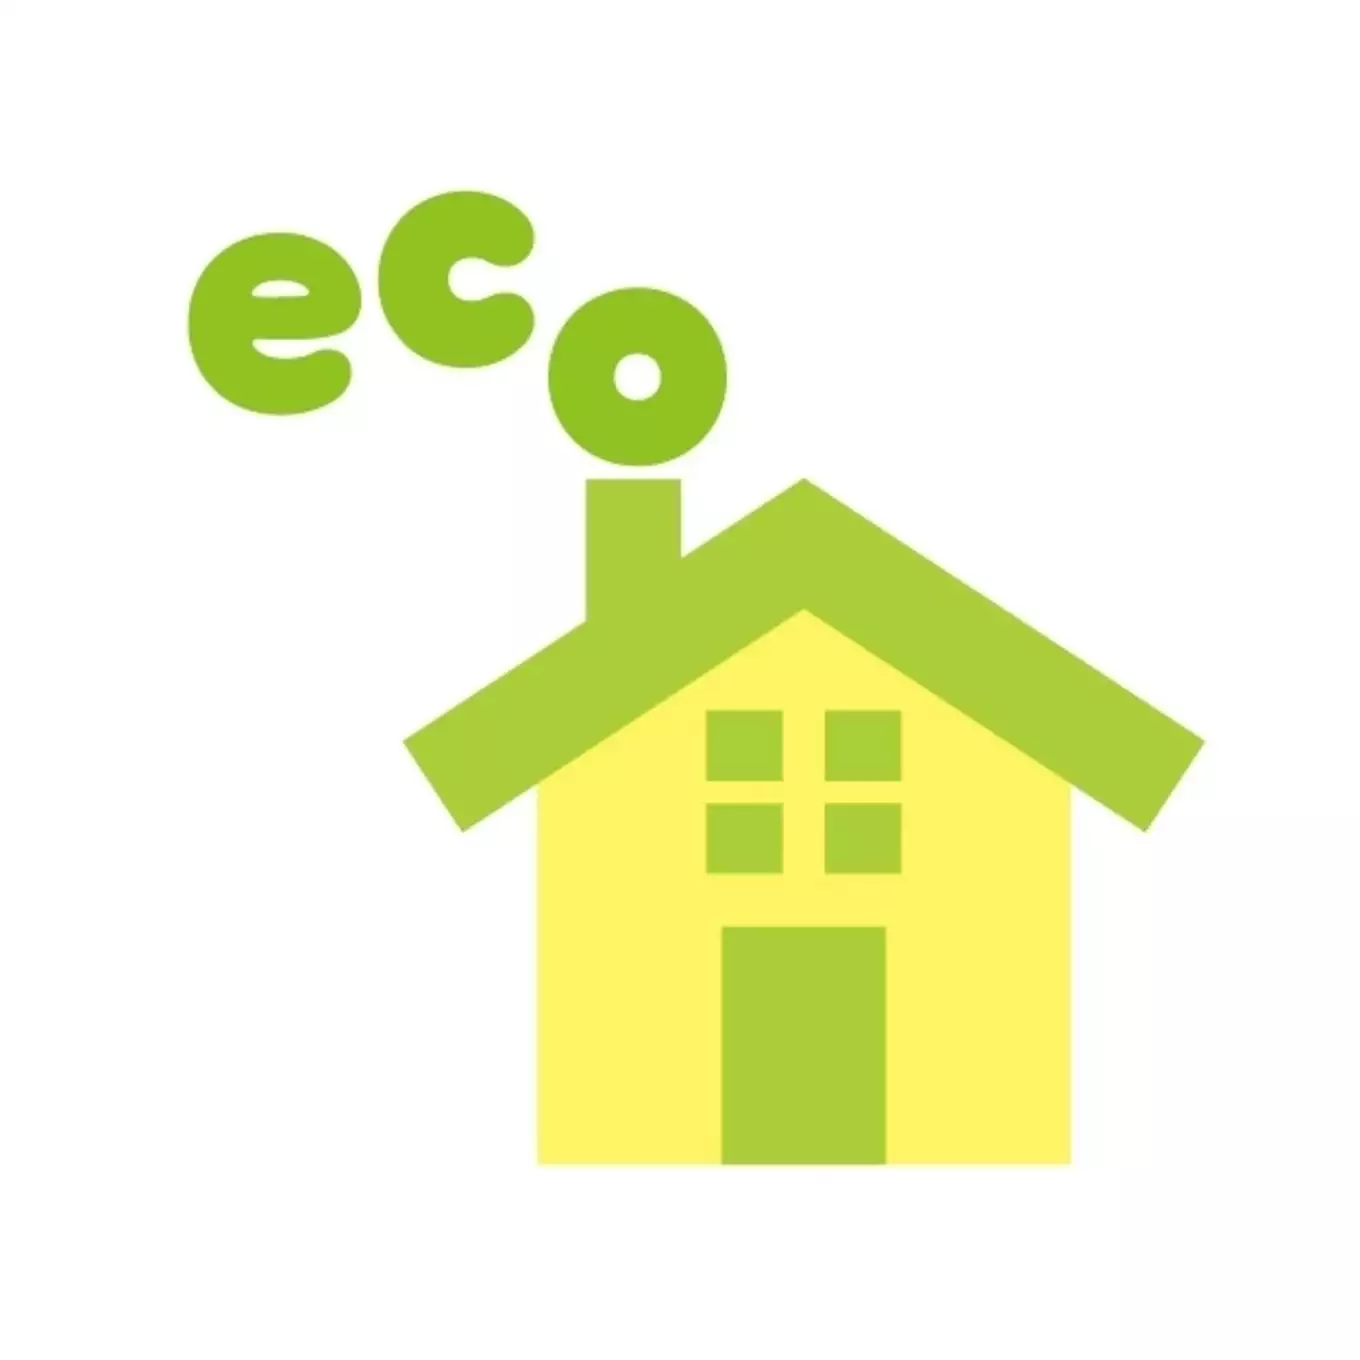 ECOの文字と家のイラスト